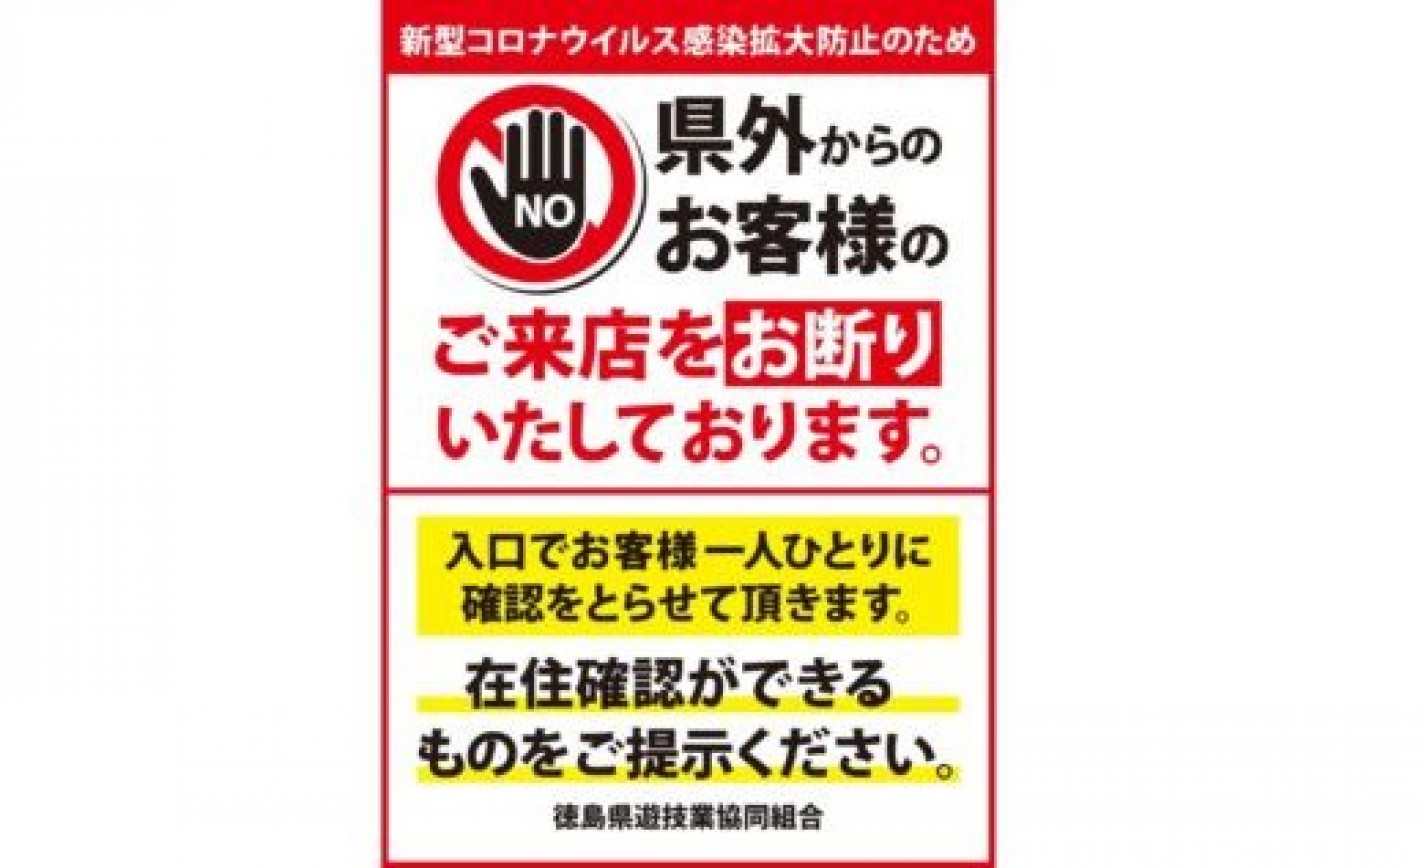 徳島県内のパチンコホール、GW中の身分証確認で「県外客」の入店防止へ eyecatch-image